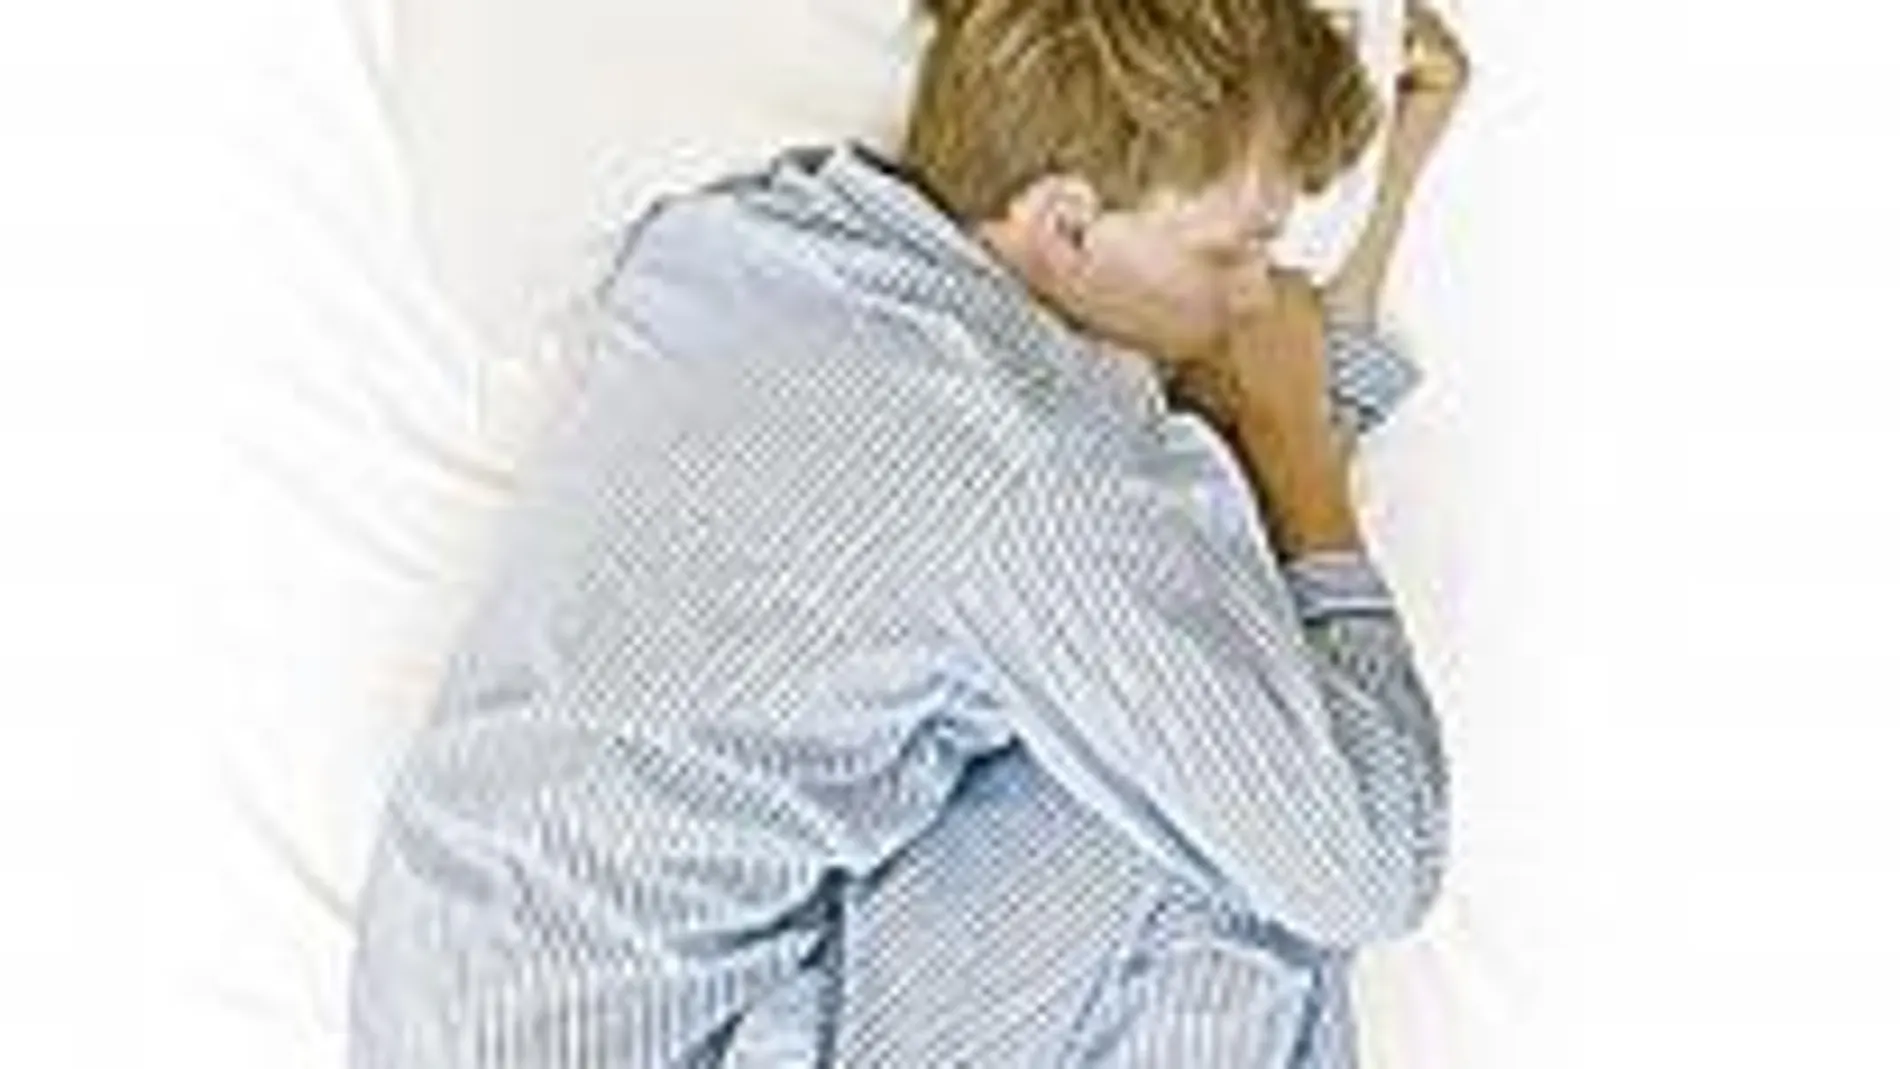 Una media de 5 horas al día mirando el teléfono aumenta el riesgo de dormir poco en un 50%